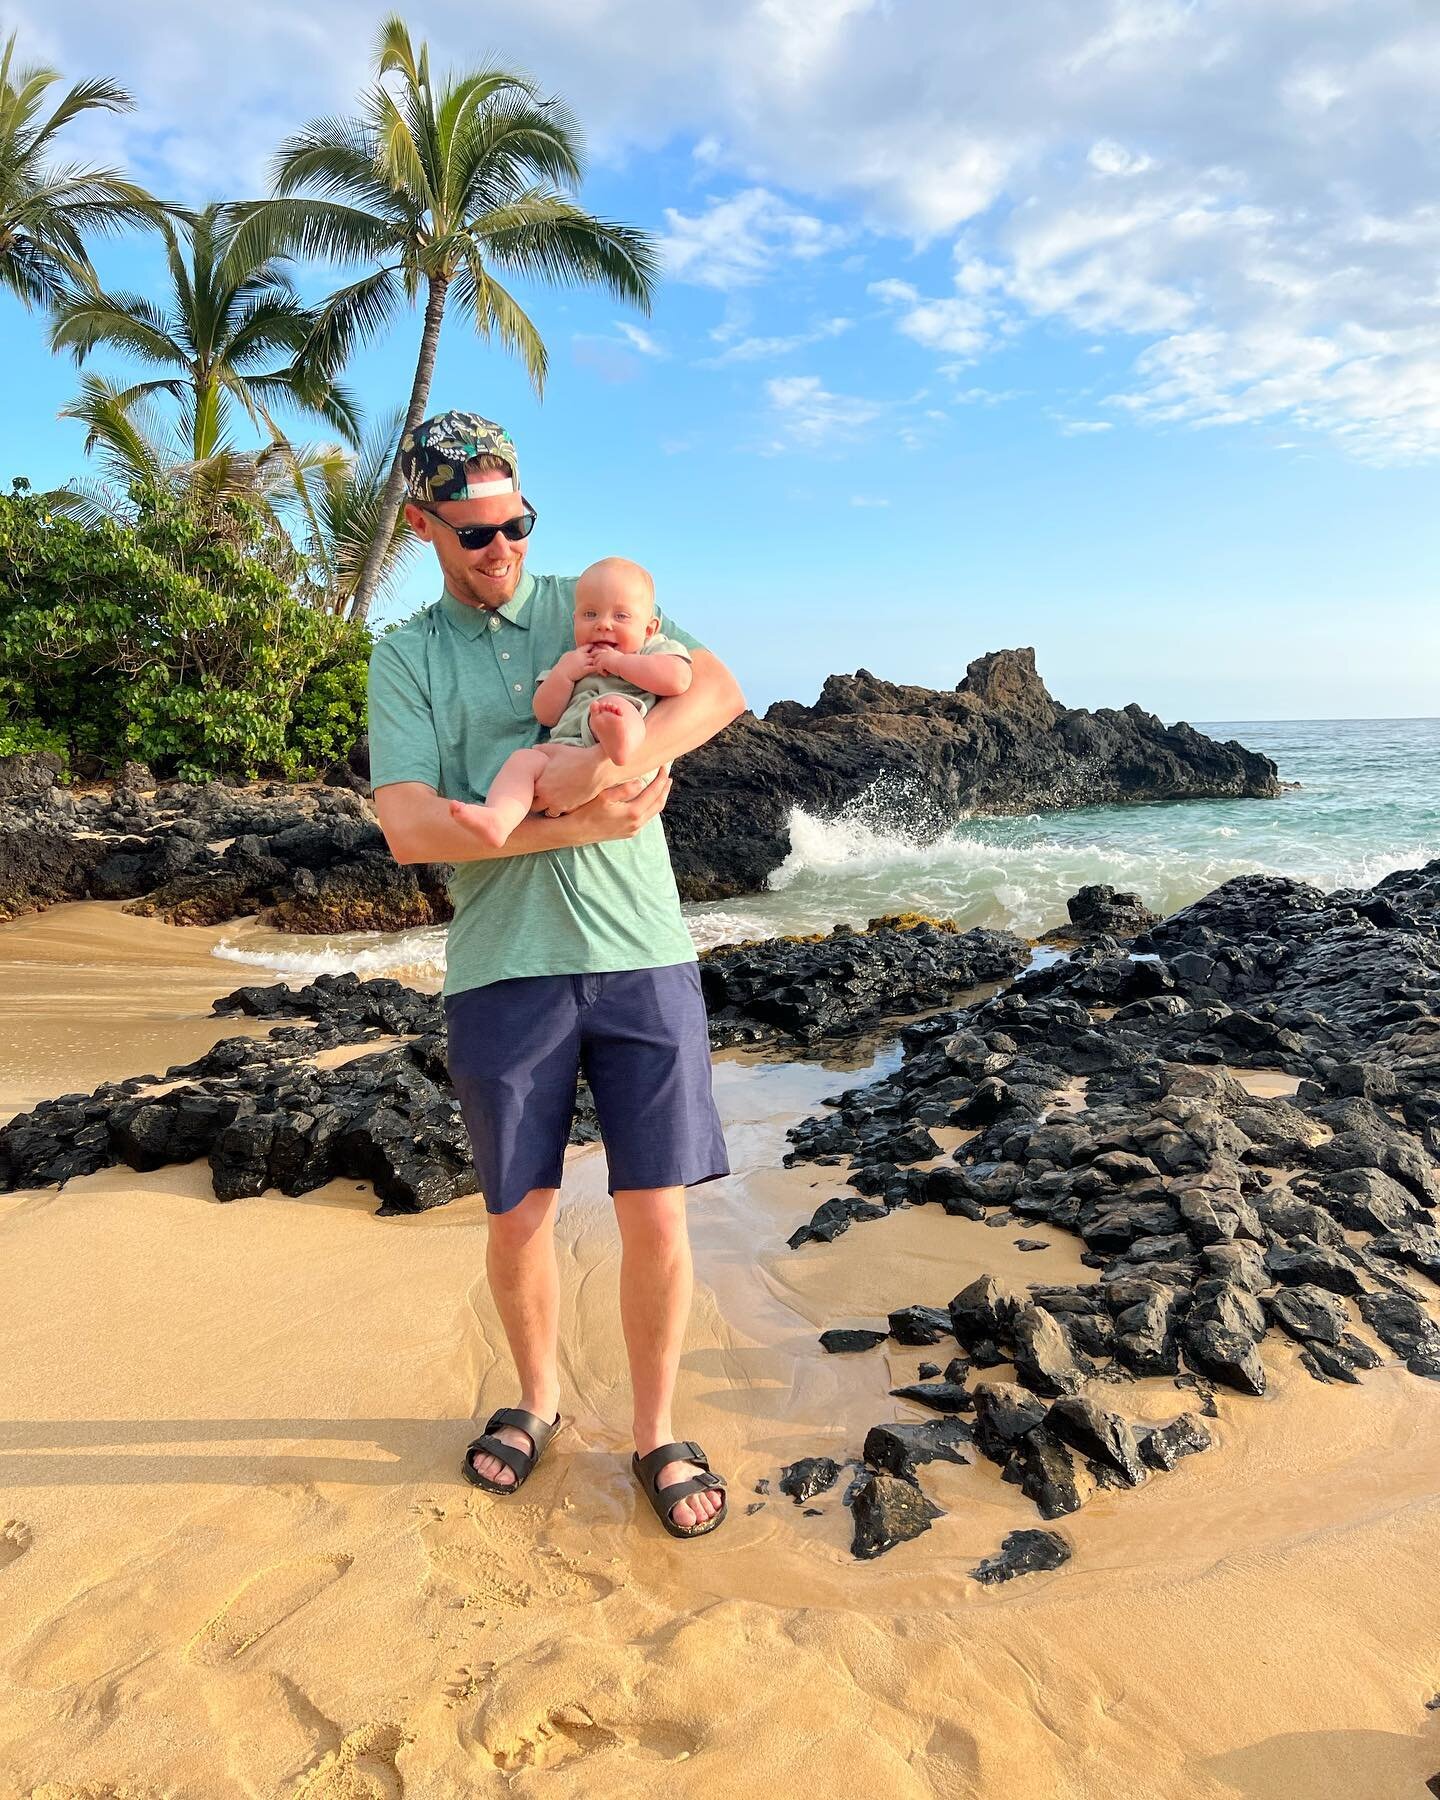 What a trip! #Maui #Hawaii #Wesman 🛬🏝🌴☀️🌺🤙🏼🔥